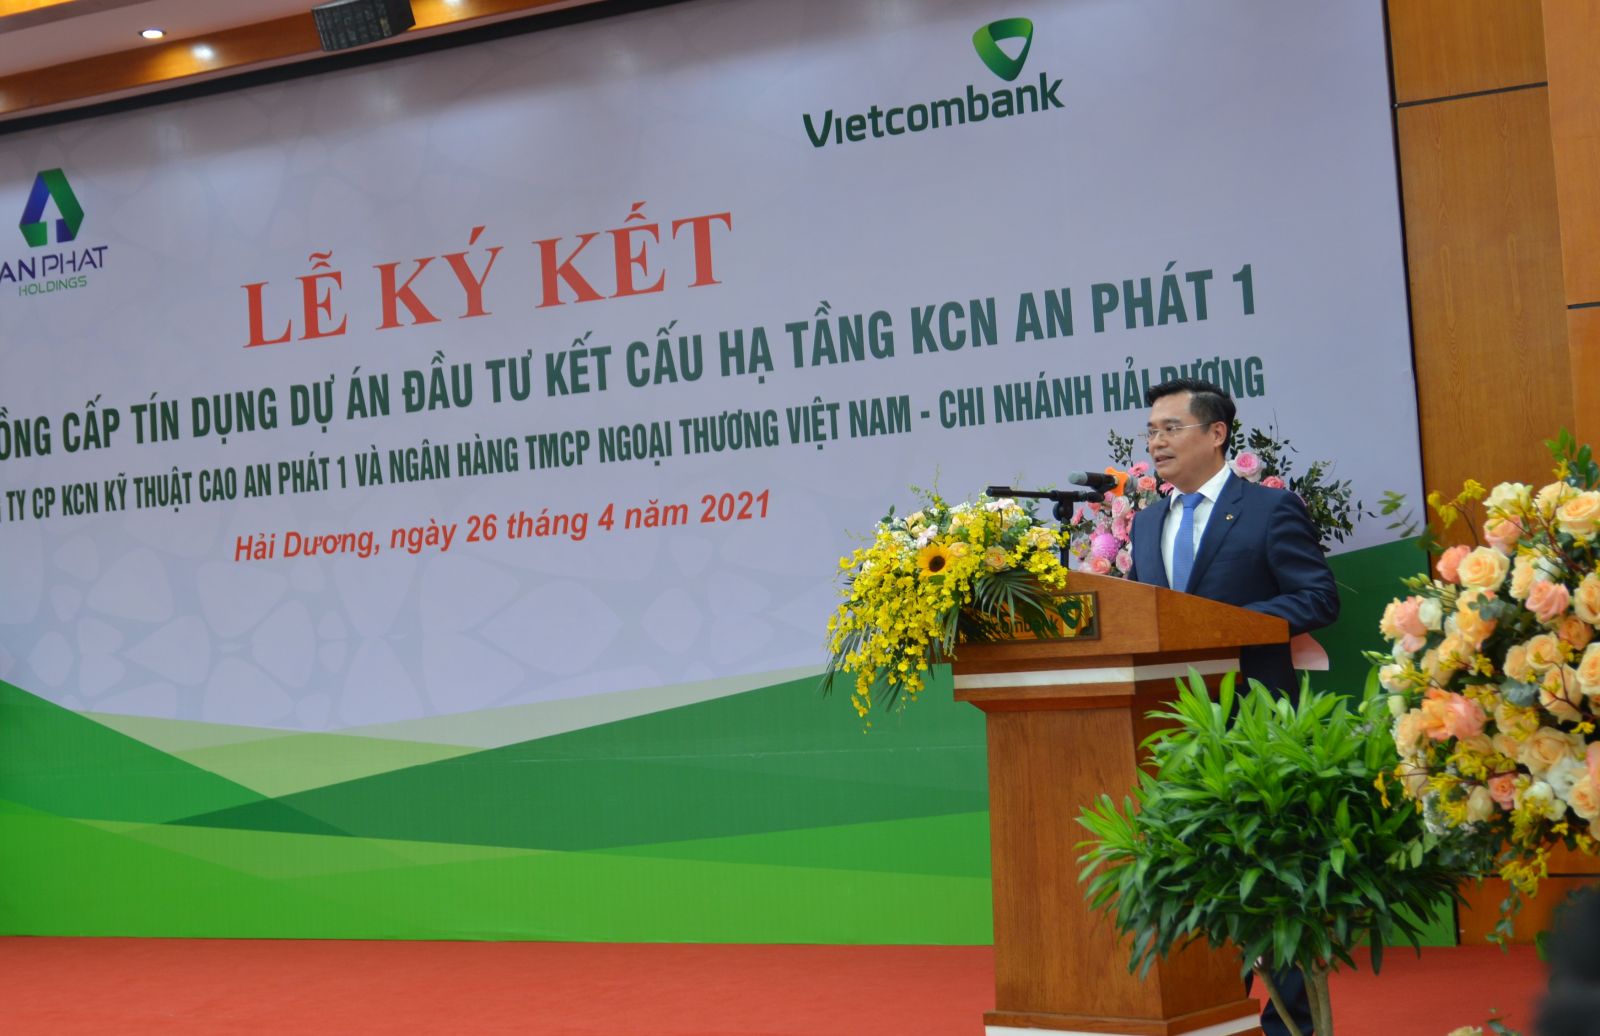 Ông Nguyễn Thanh Tùng - Phó Tổng Giám đốc Vietcombank phát biểu tại buổi lễ